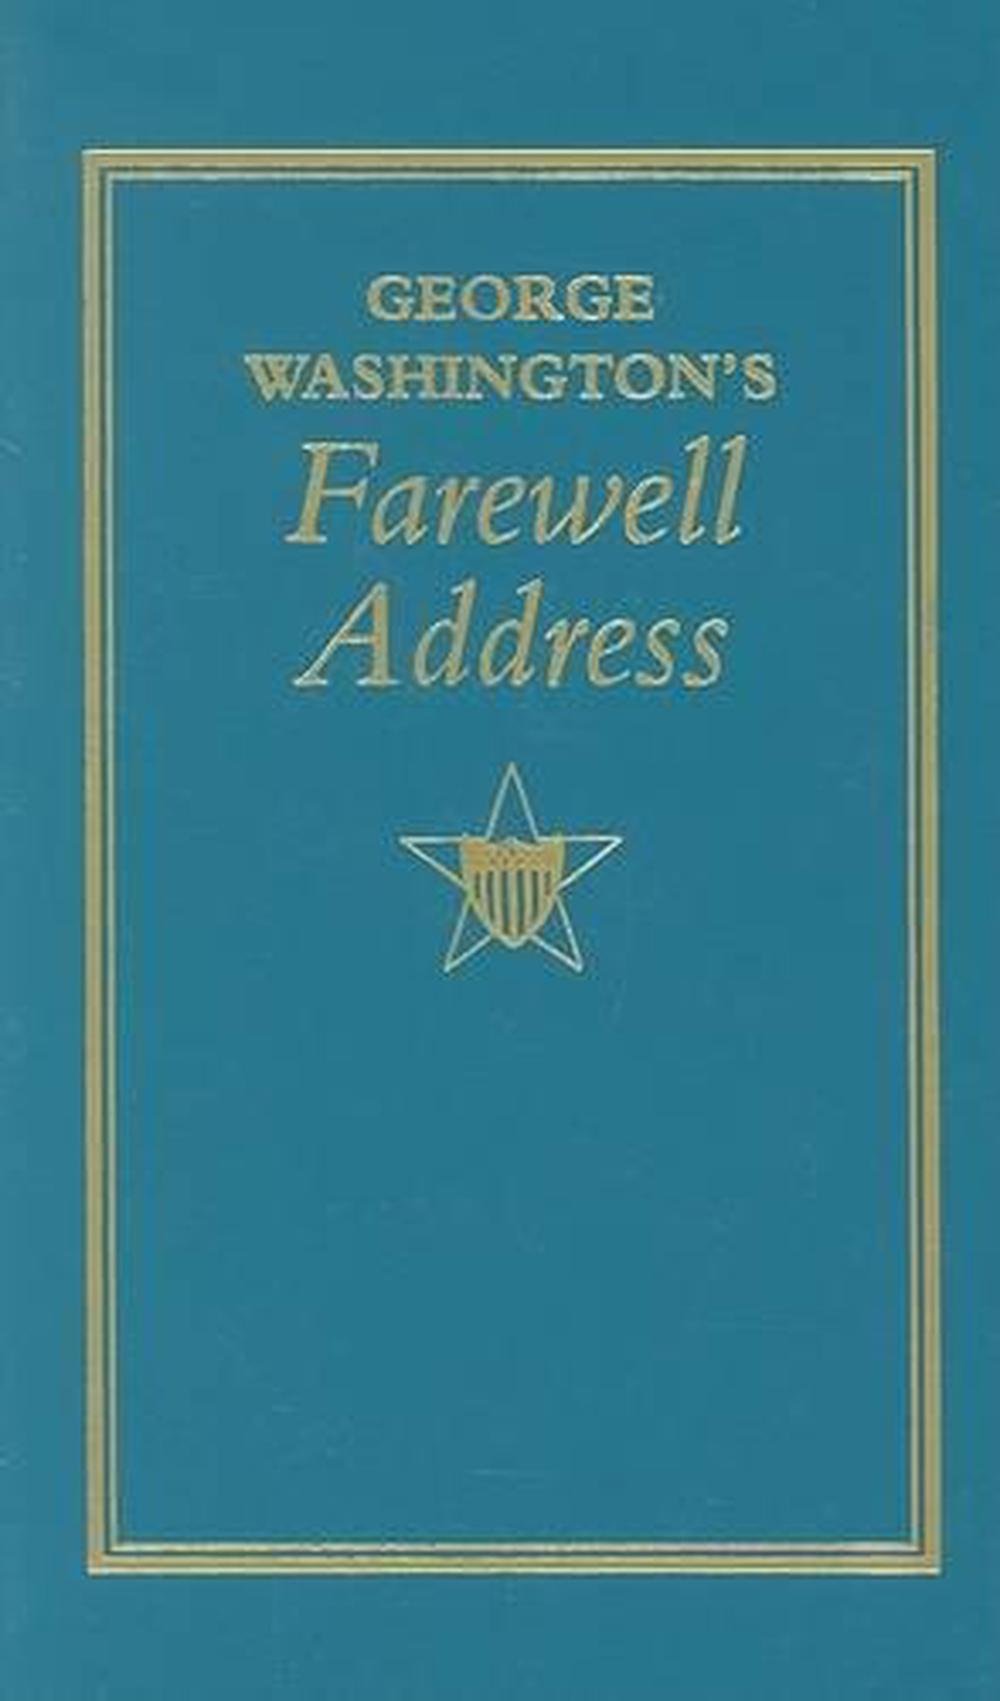 when was washingtons farewell address written